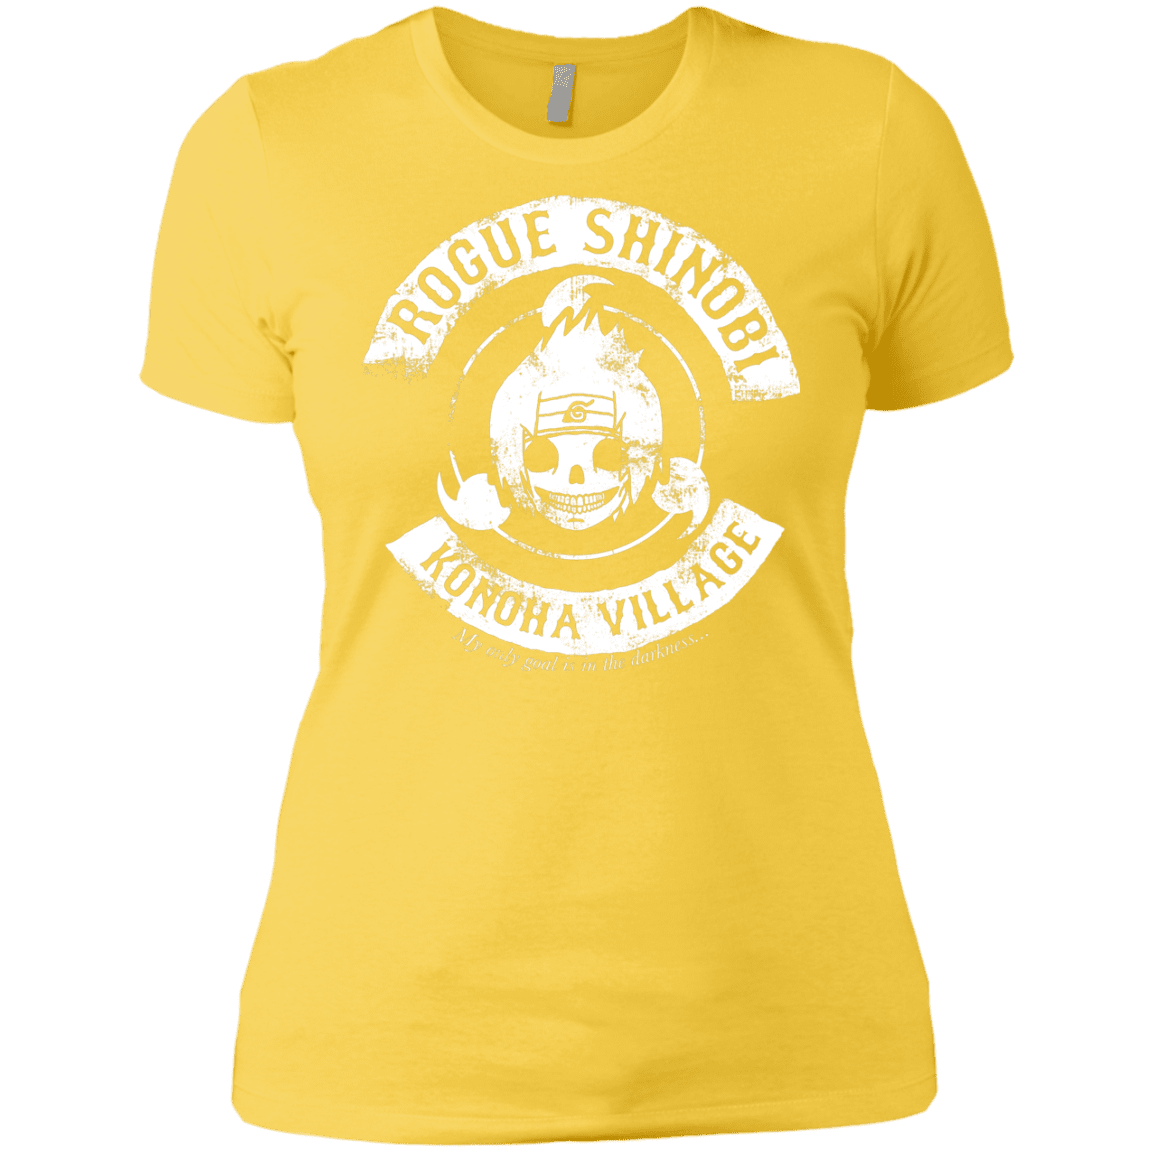 T-Shirts Vibrant Yellow / X-Small Rogue Shinobi Women's Premium T-Shirt